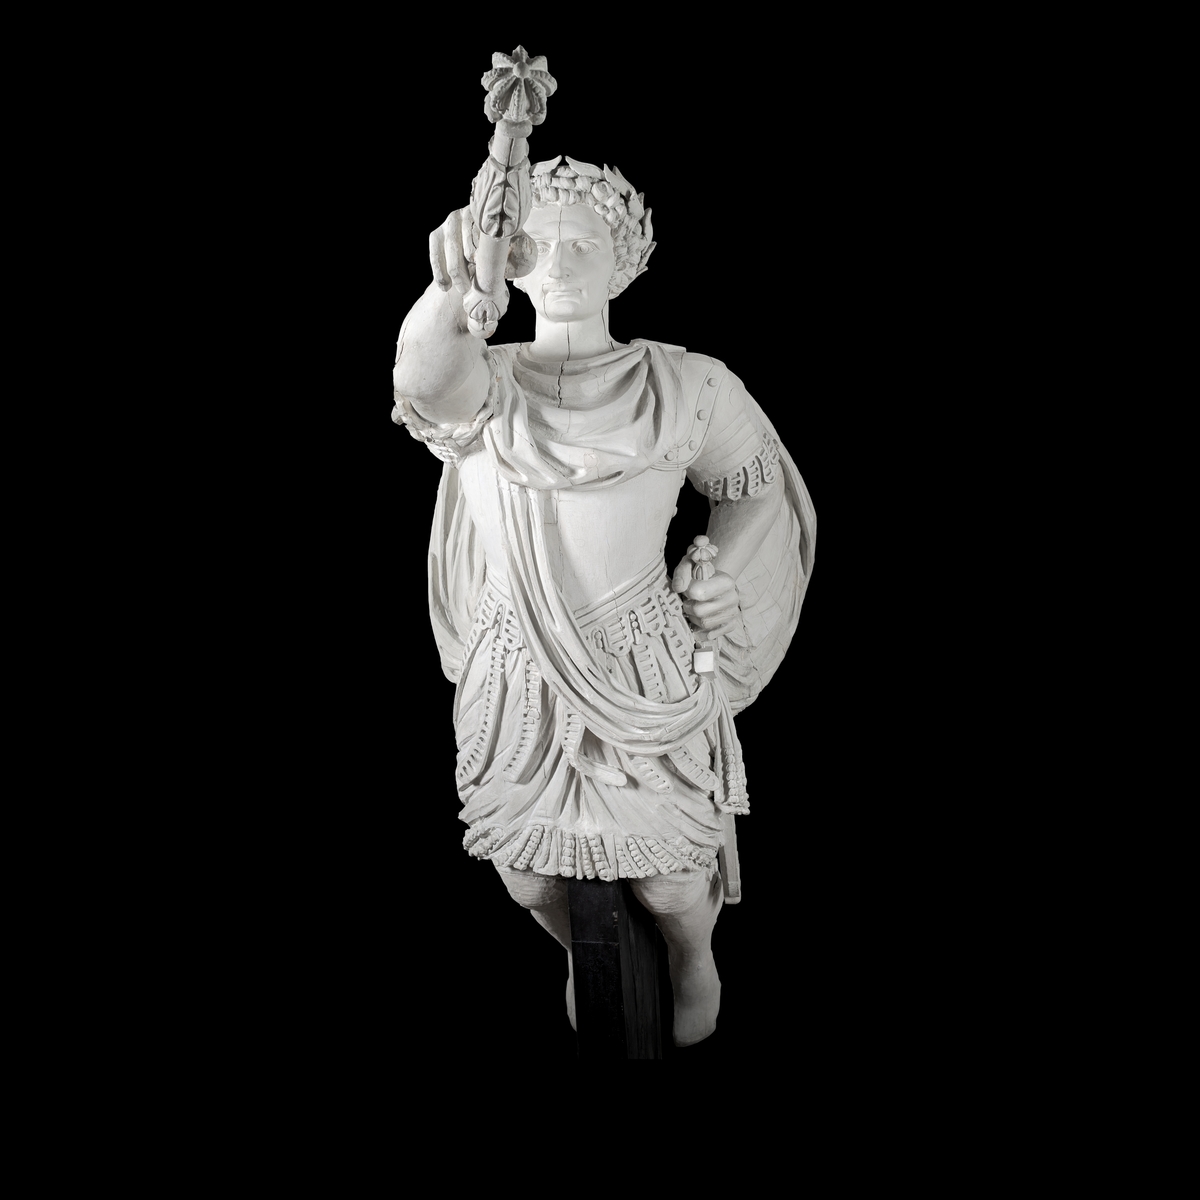 Galjonsbild tillhörande linjeskeppet Carl XIV Johan.
Lagerkransad mansfigur i romersk imperatorsrustning med marskalkstav i utsträckt höger hand och med vänster hand hållande i svärdfästet. Porträtt av Carl XVI Johan.
Konstnär: Emanuel Törnström (1798-1833) Möjligen kan den dock var påbörjad av hans far Johan Törnström.